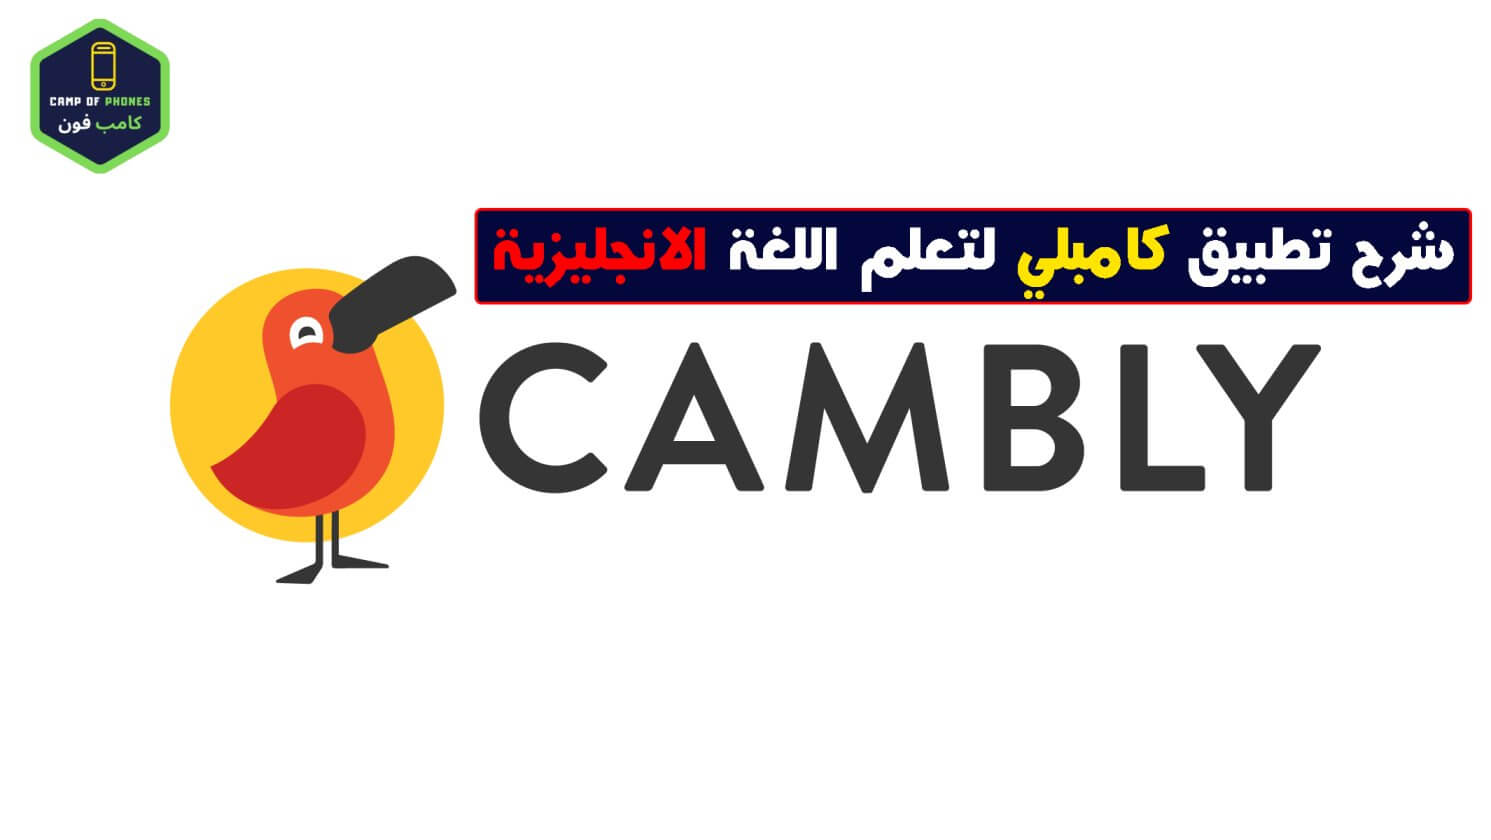 تحميل تطبيق كامبلي Cambly لتعلم اللغة الانجليزية من الصفر بالفيديو